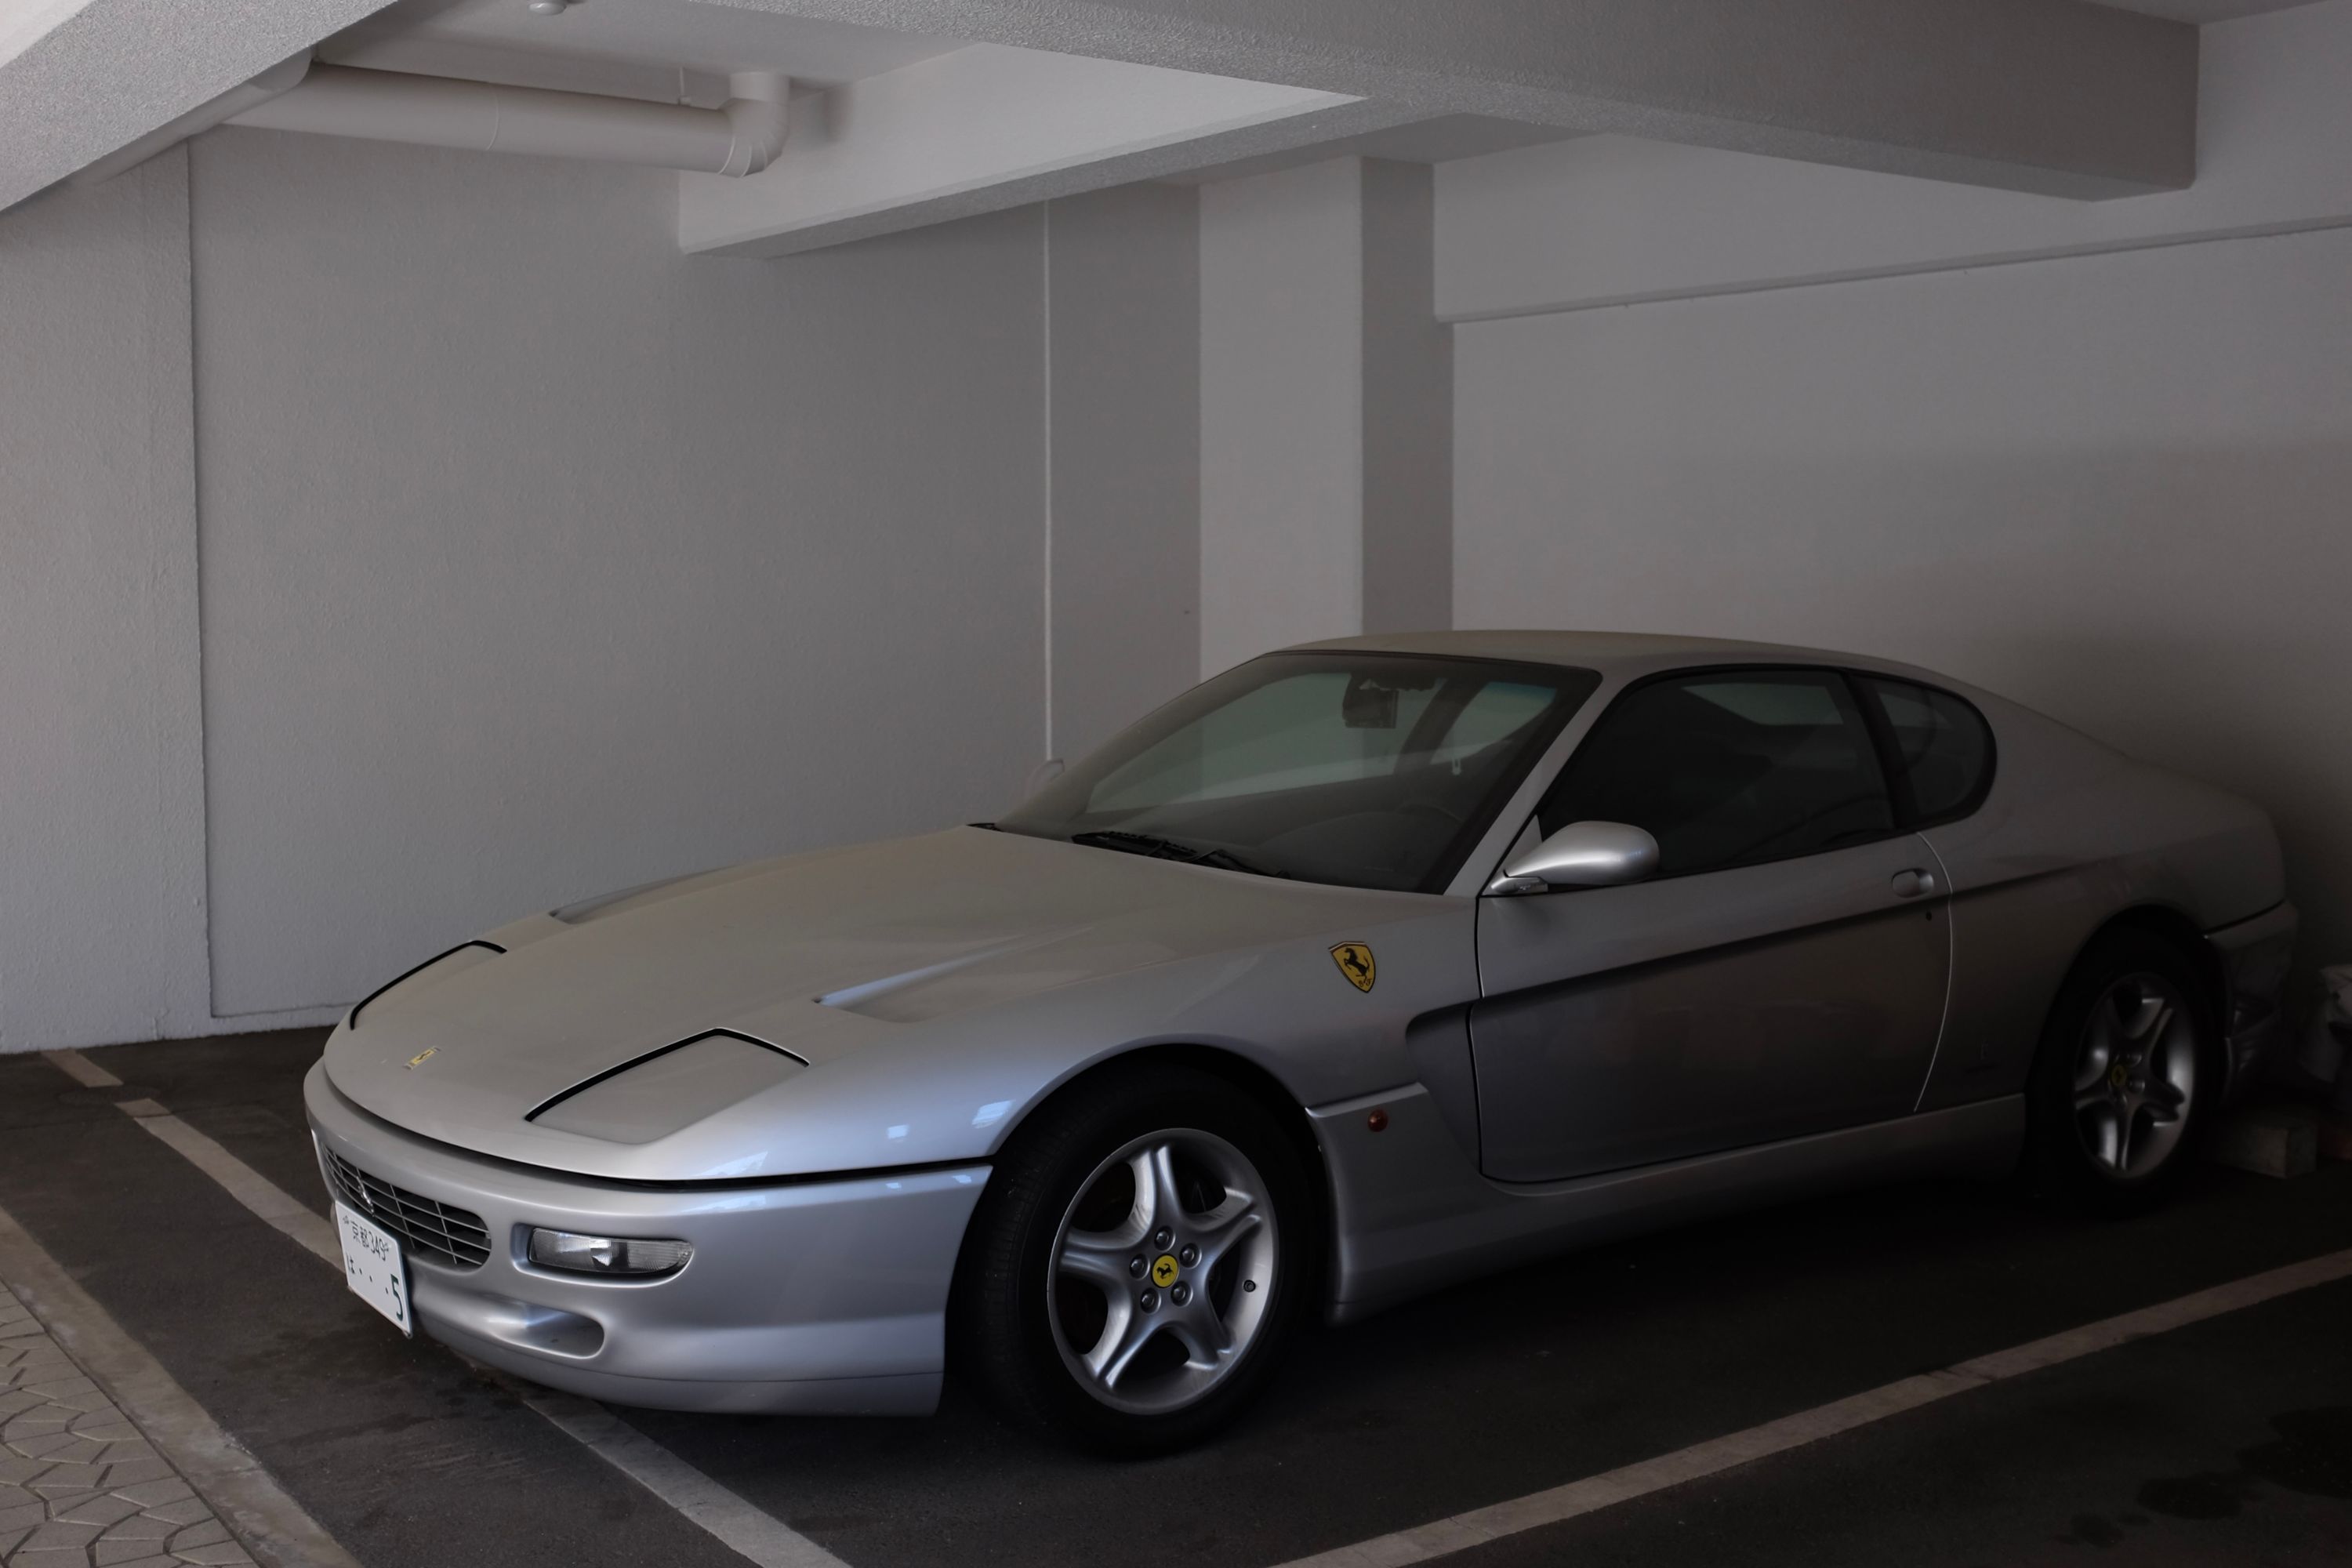 A silver Ferrari 456 in a garage.